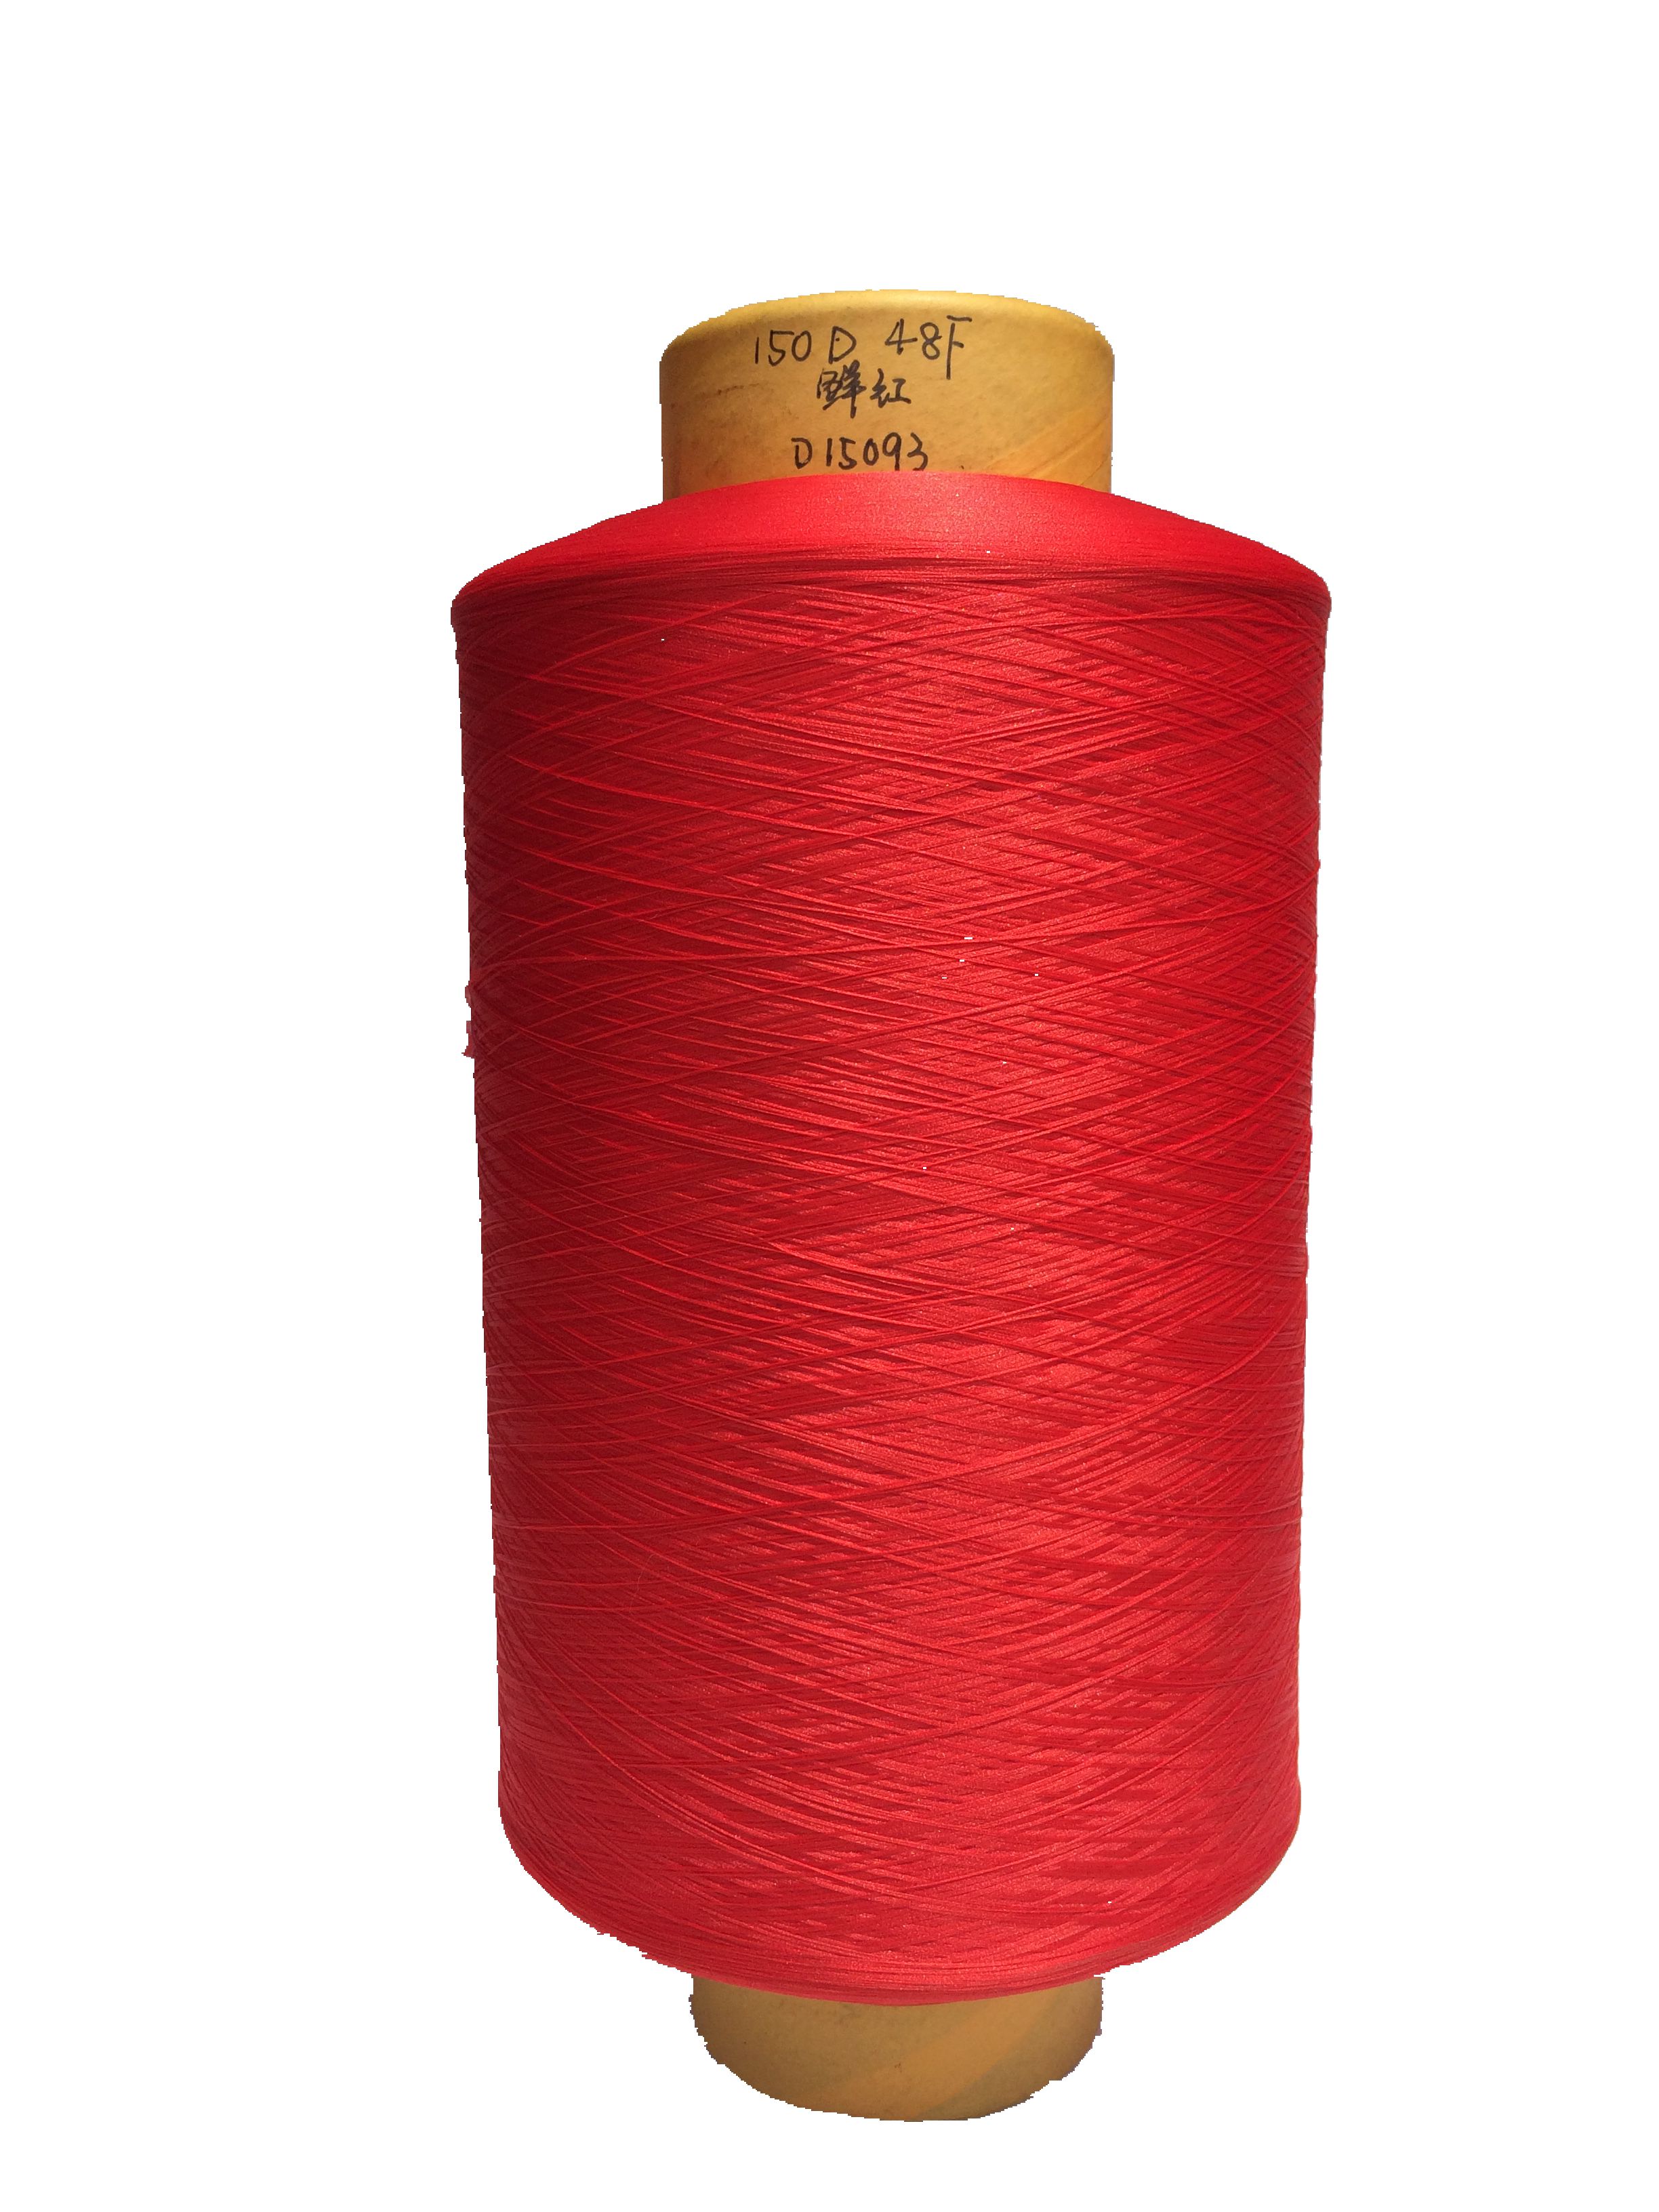 [9601162800355] 有色DTY - 志泓纺织 - DTY 涤纶 150D 48F - 鲜红